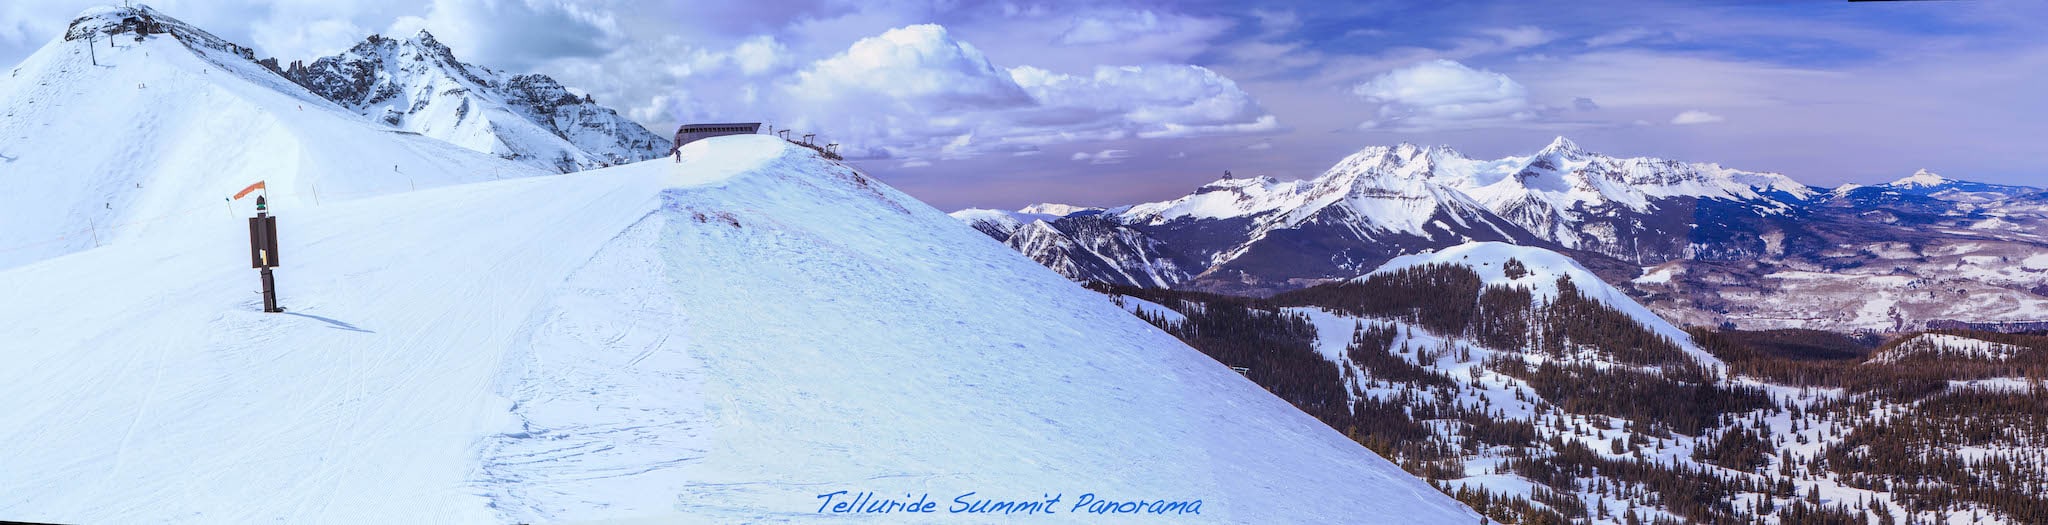 Telluride Ski Resort Summit Panorama